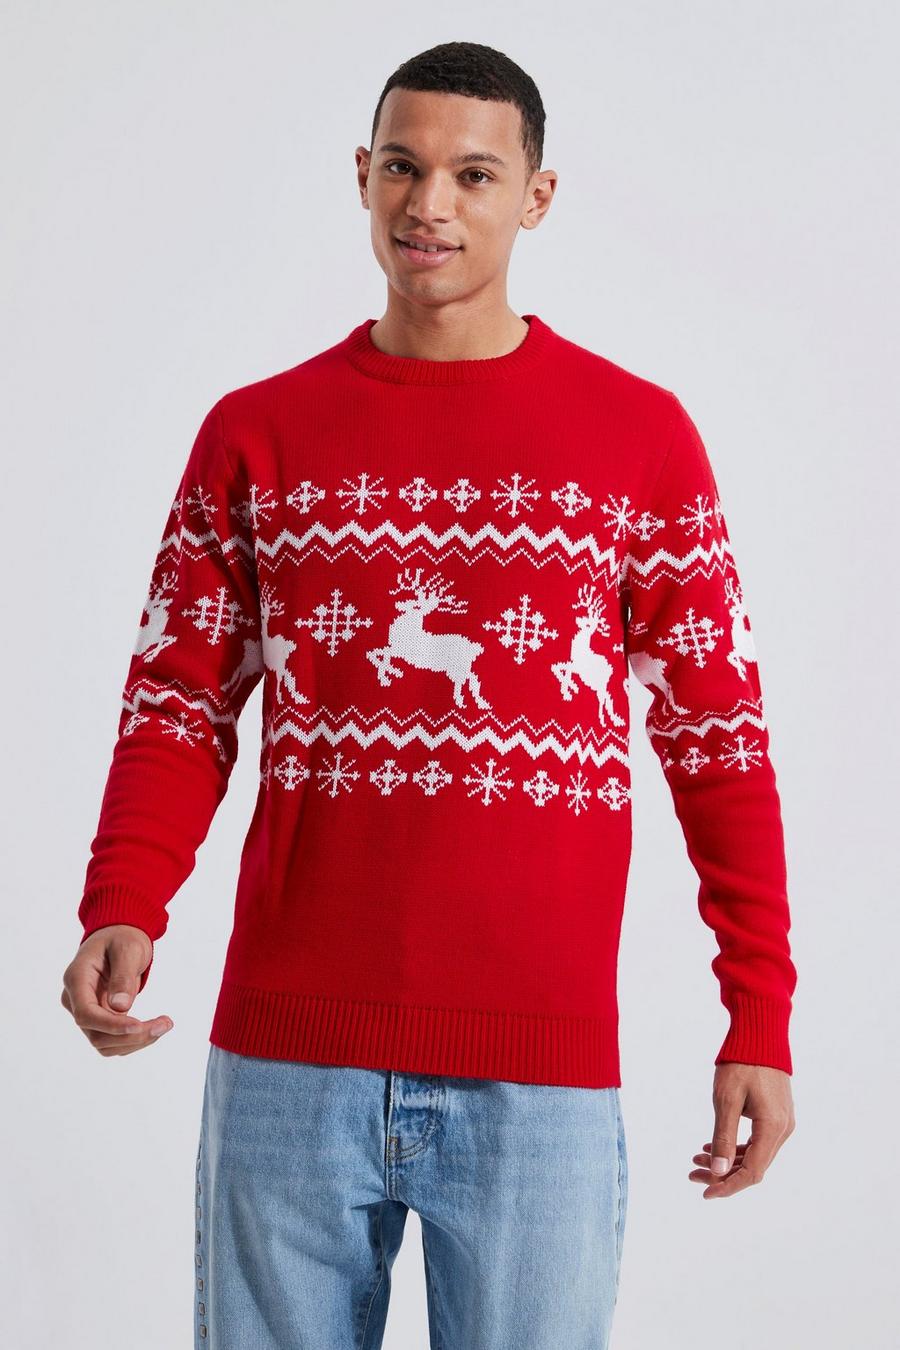 Maglione natalizio Tall con renne, pannelli e motivi Fairisle, Red rosso